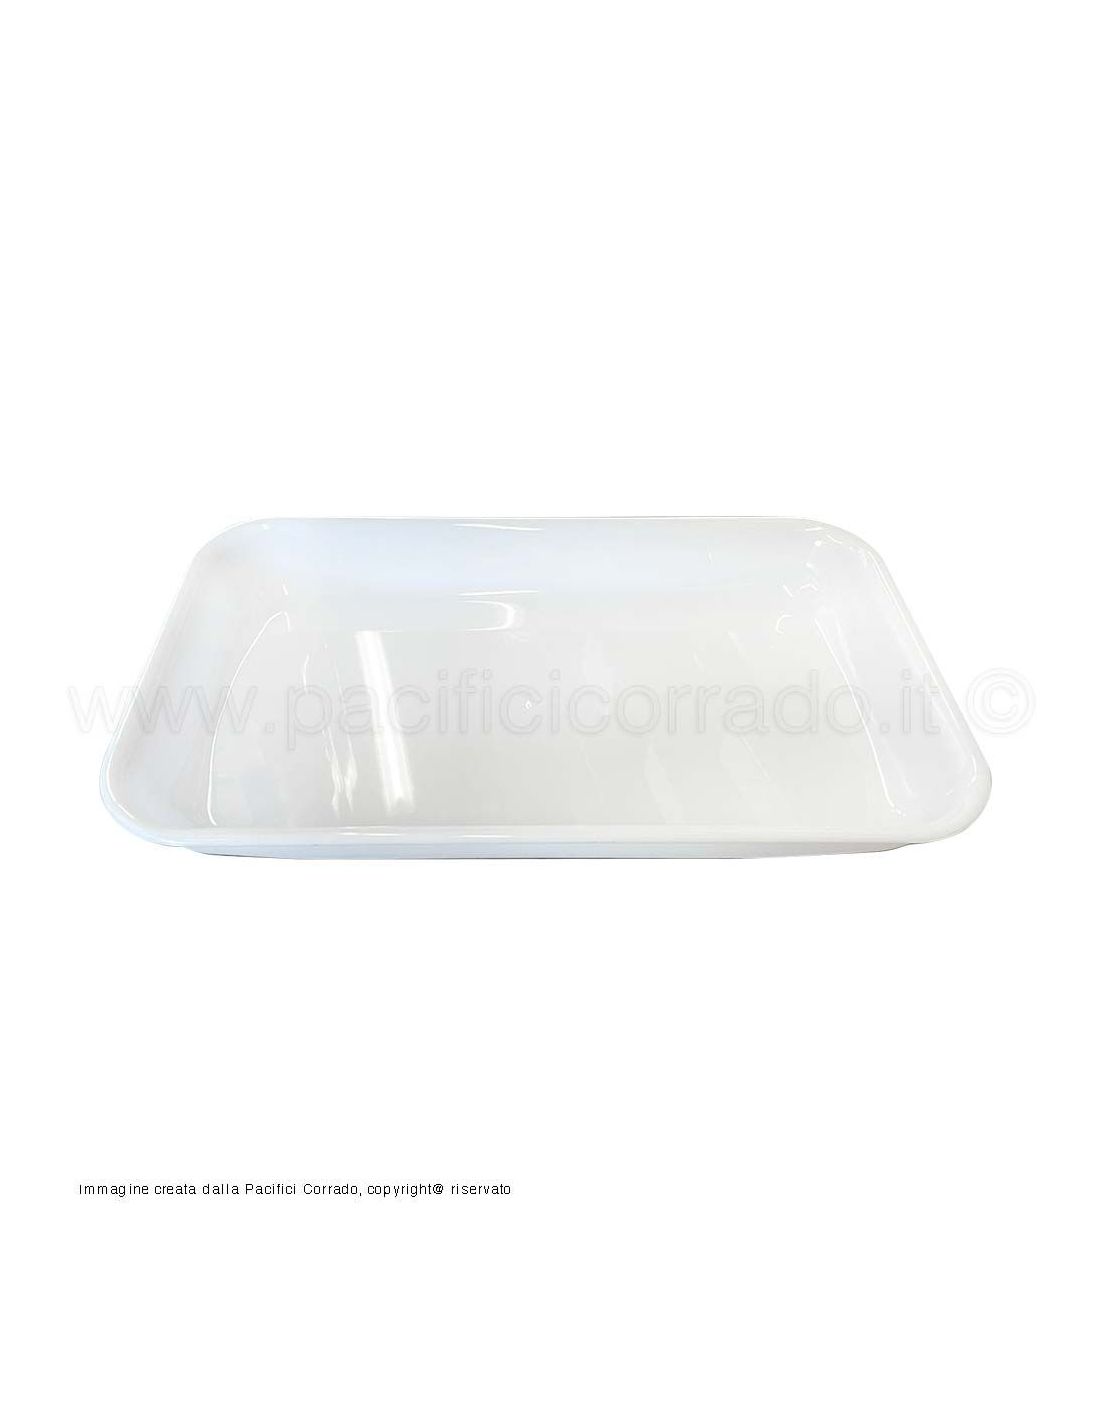 piatto da esposizione bancone frigo in met  misura 420x240x45 mm colore bianco